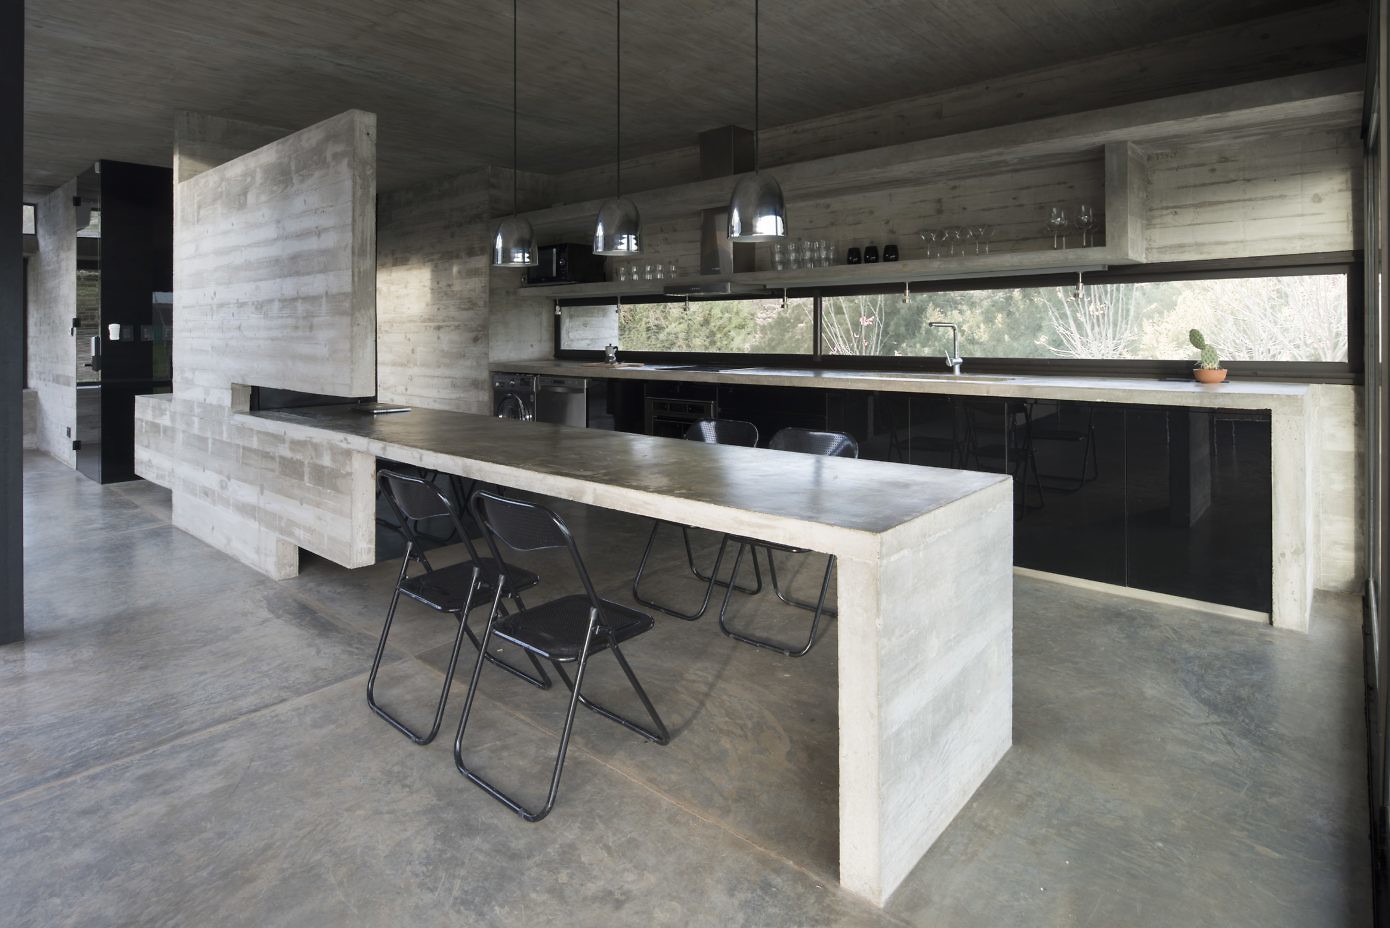 Casa Mach by Luciano Kruk Arquitectos